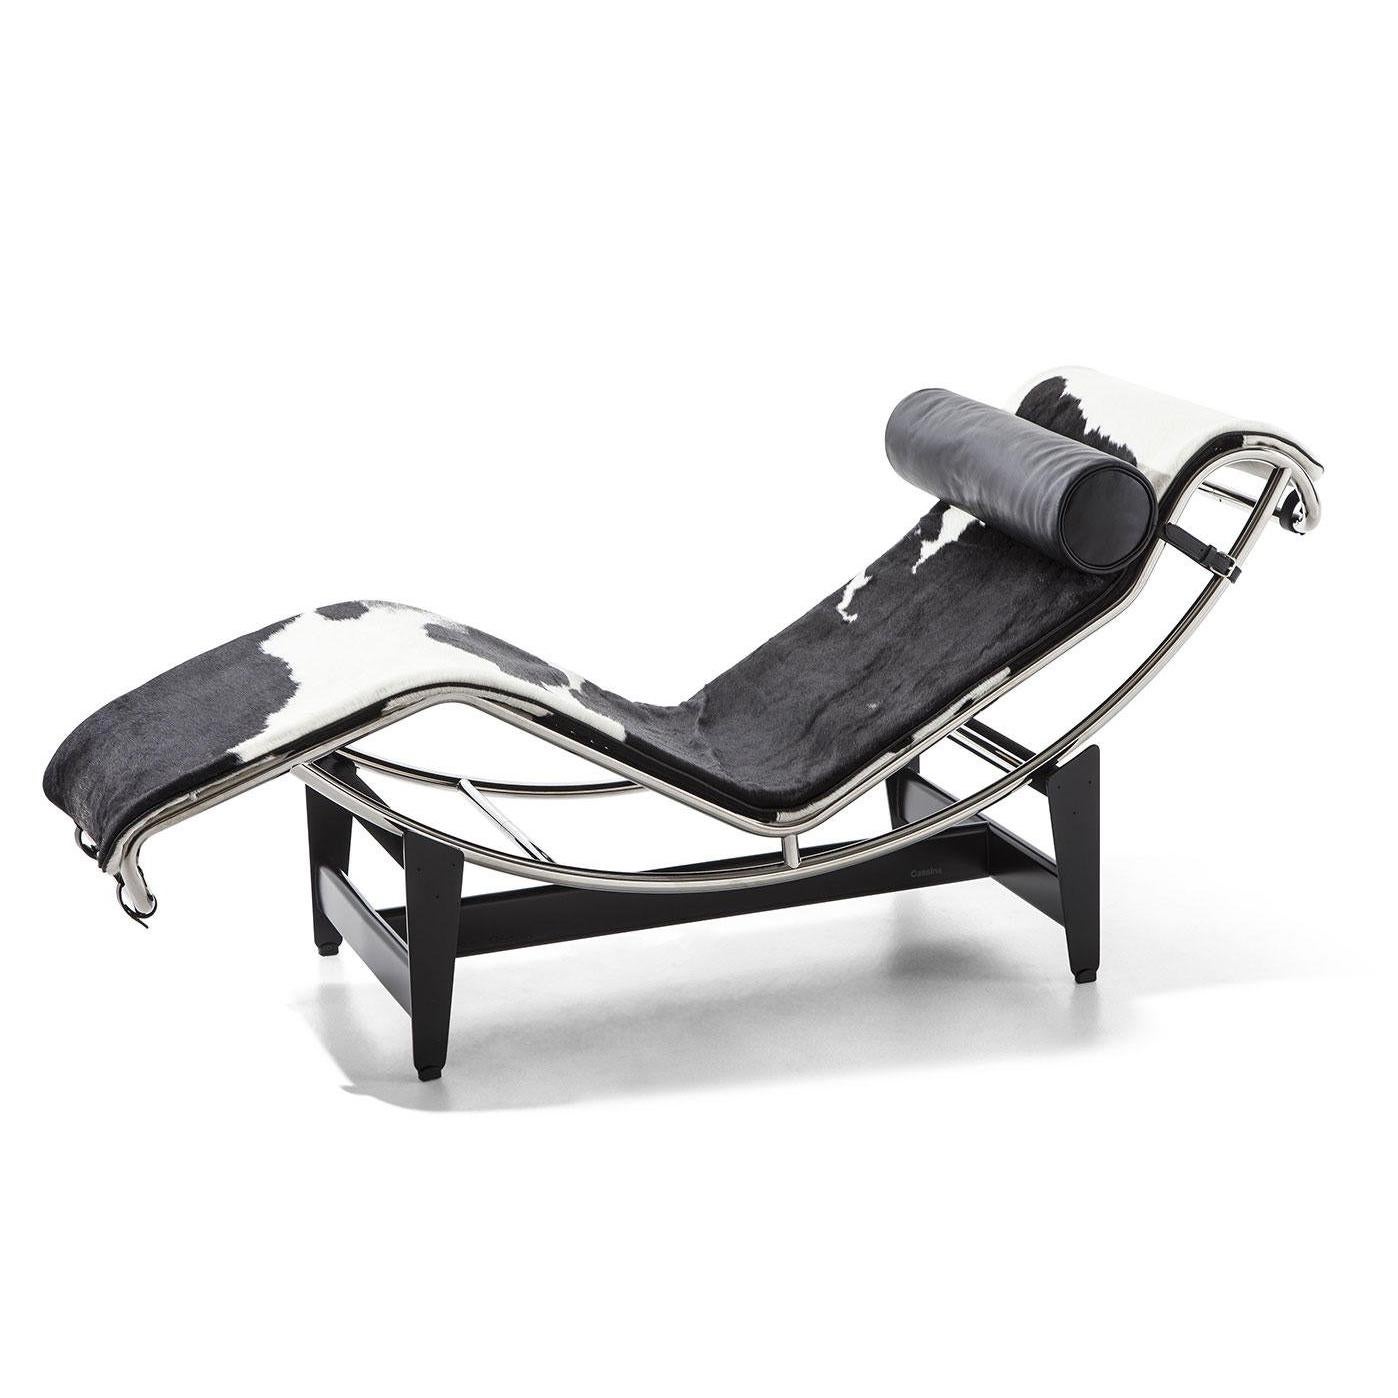 Chaise longue conçue par Le Corbusier, Pierre Jeanneret, Charlotte Perriand en 1928.
Fabriqué par Cassina en Italie.

Chaise longue avec structure réglable en acier chromé trivalent poli (CR3). Base en acier émaillé noir.

Conçue en 1928, cette